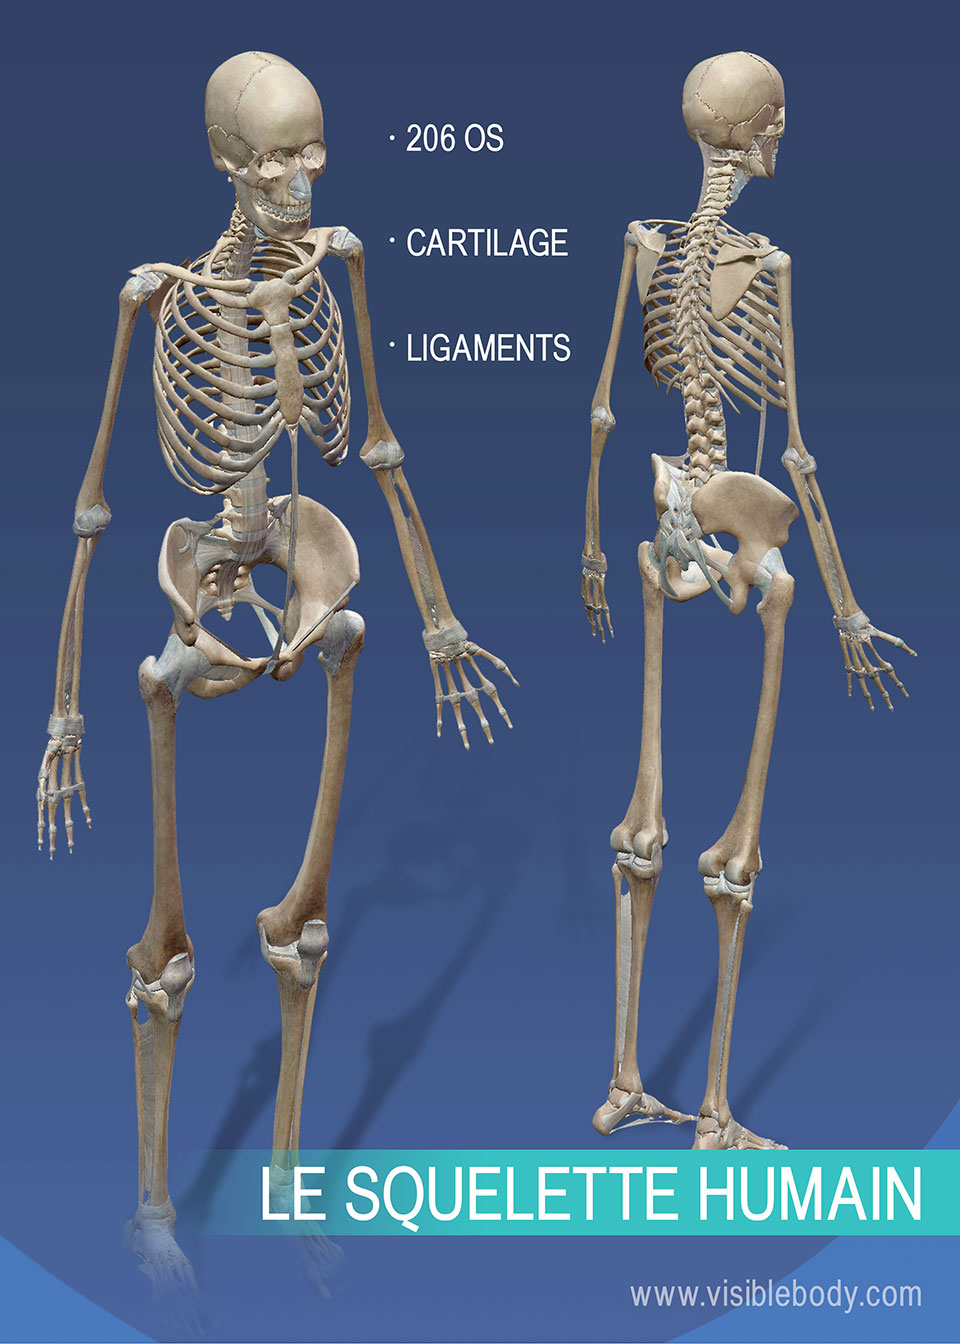 Le système squelettique est composé de 206 os, du cartilage et des ligaments